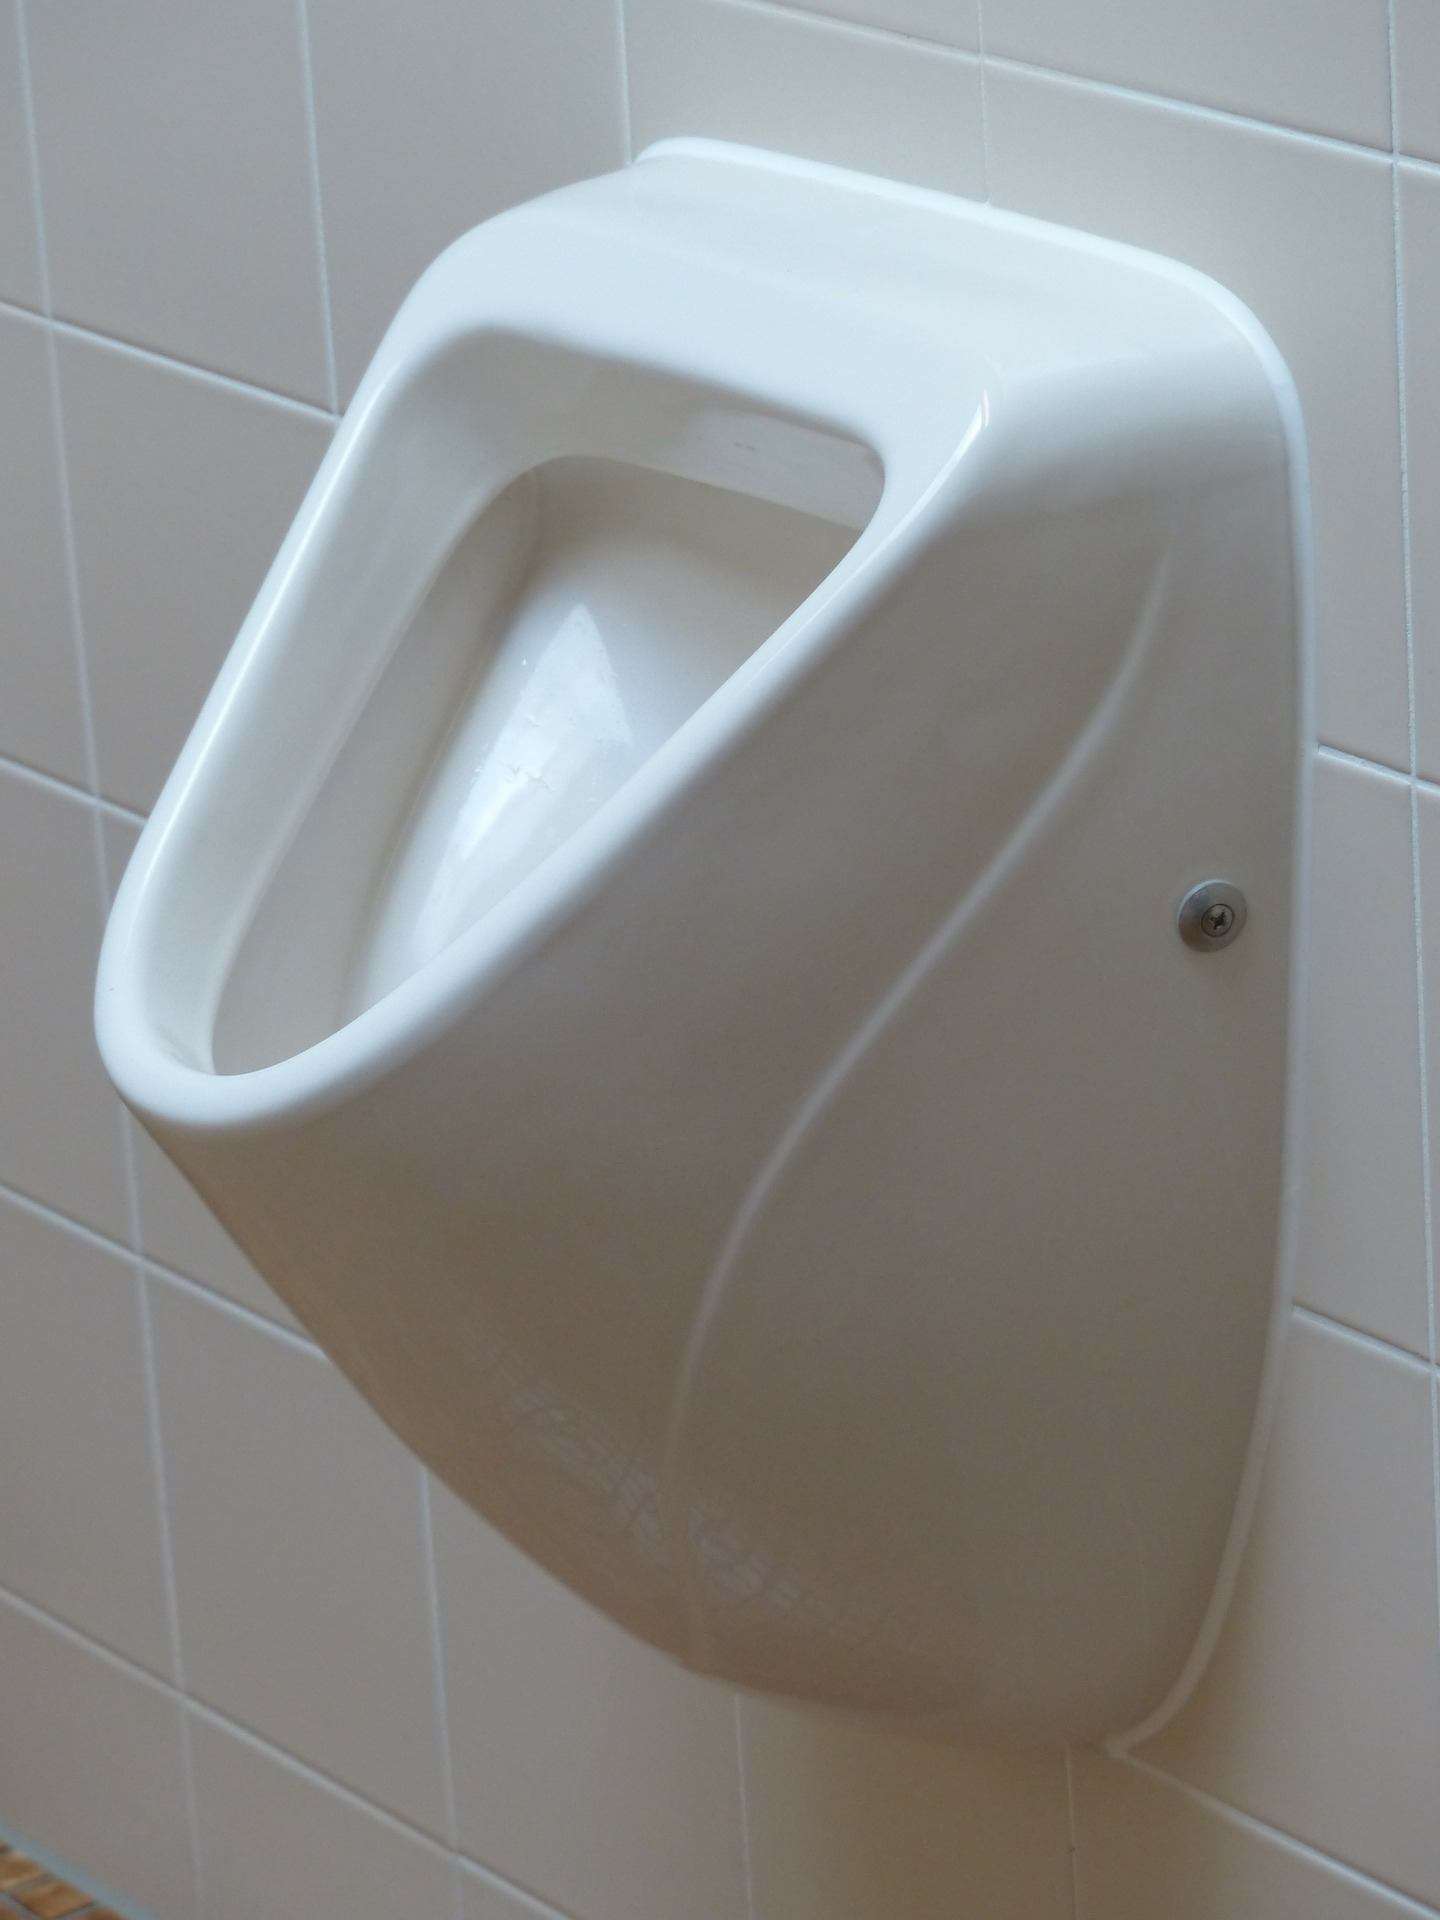 Urinal anschließen – So geht’s